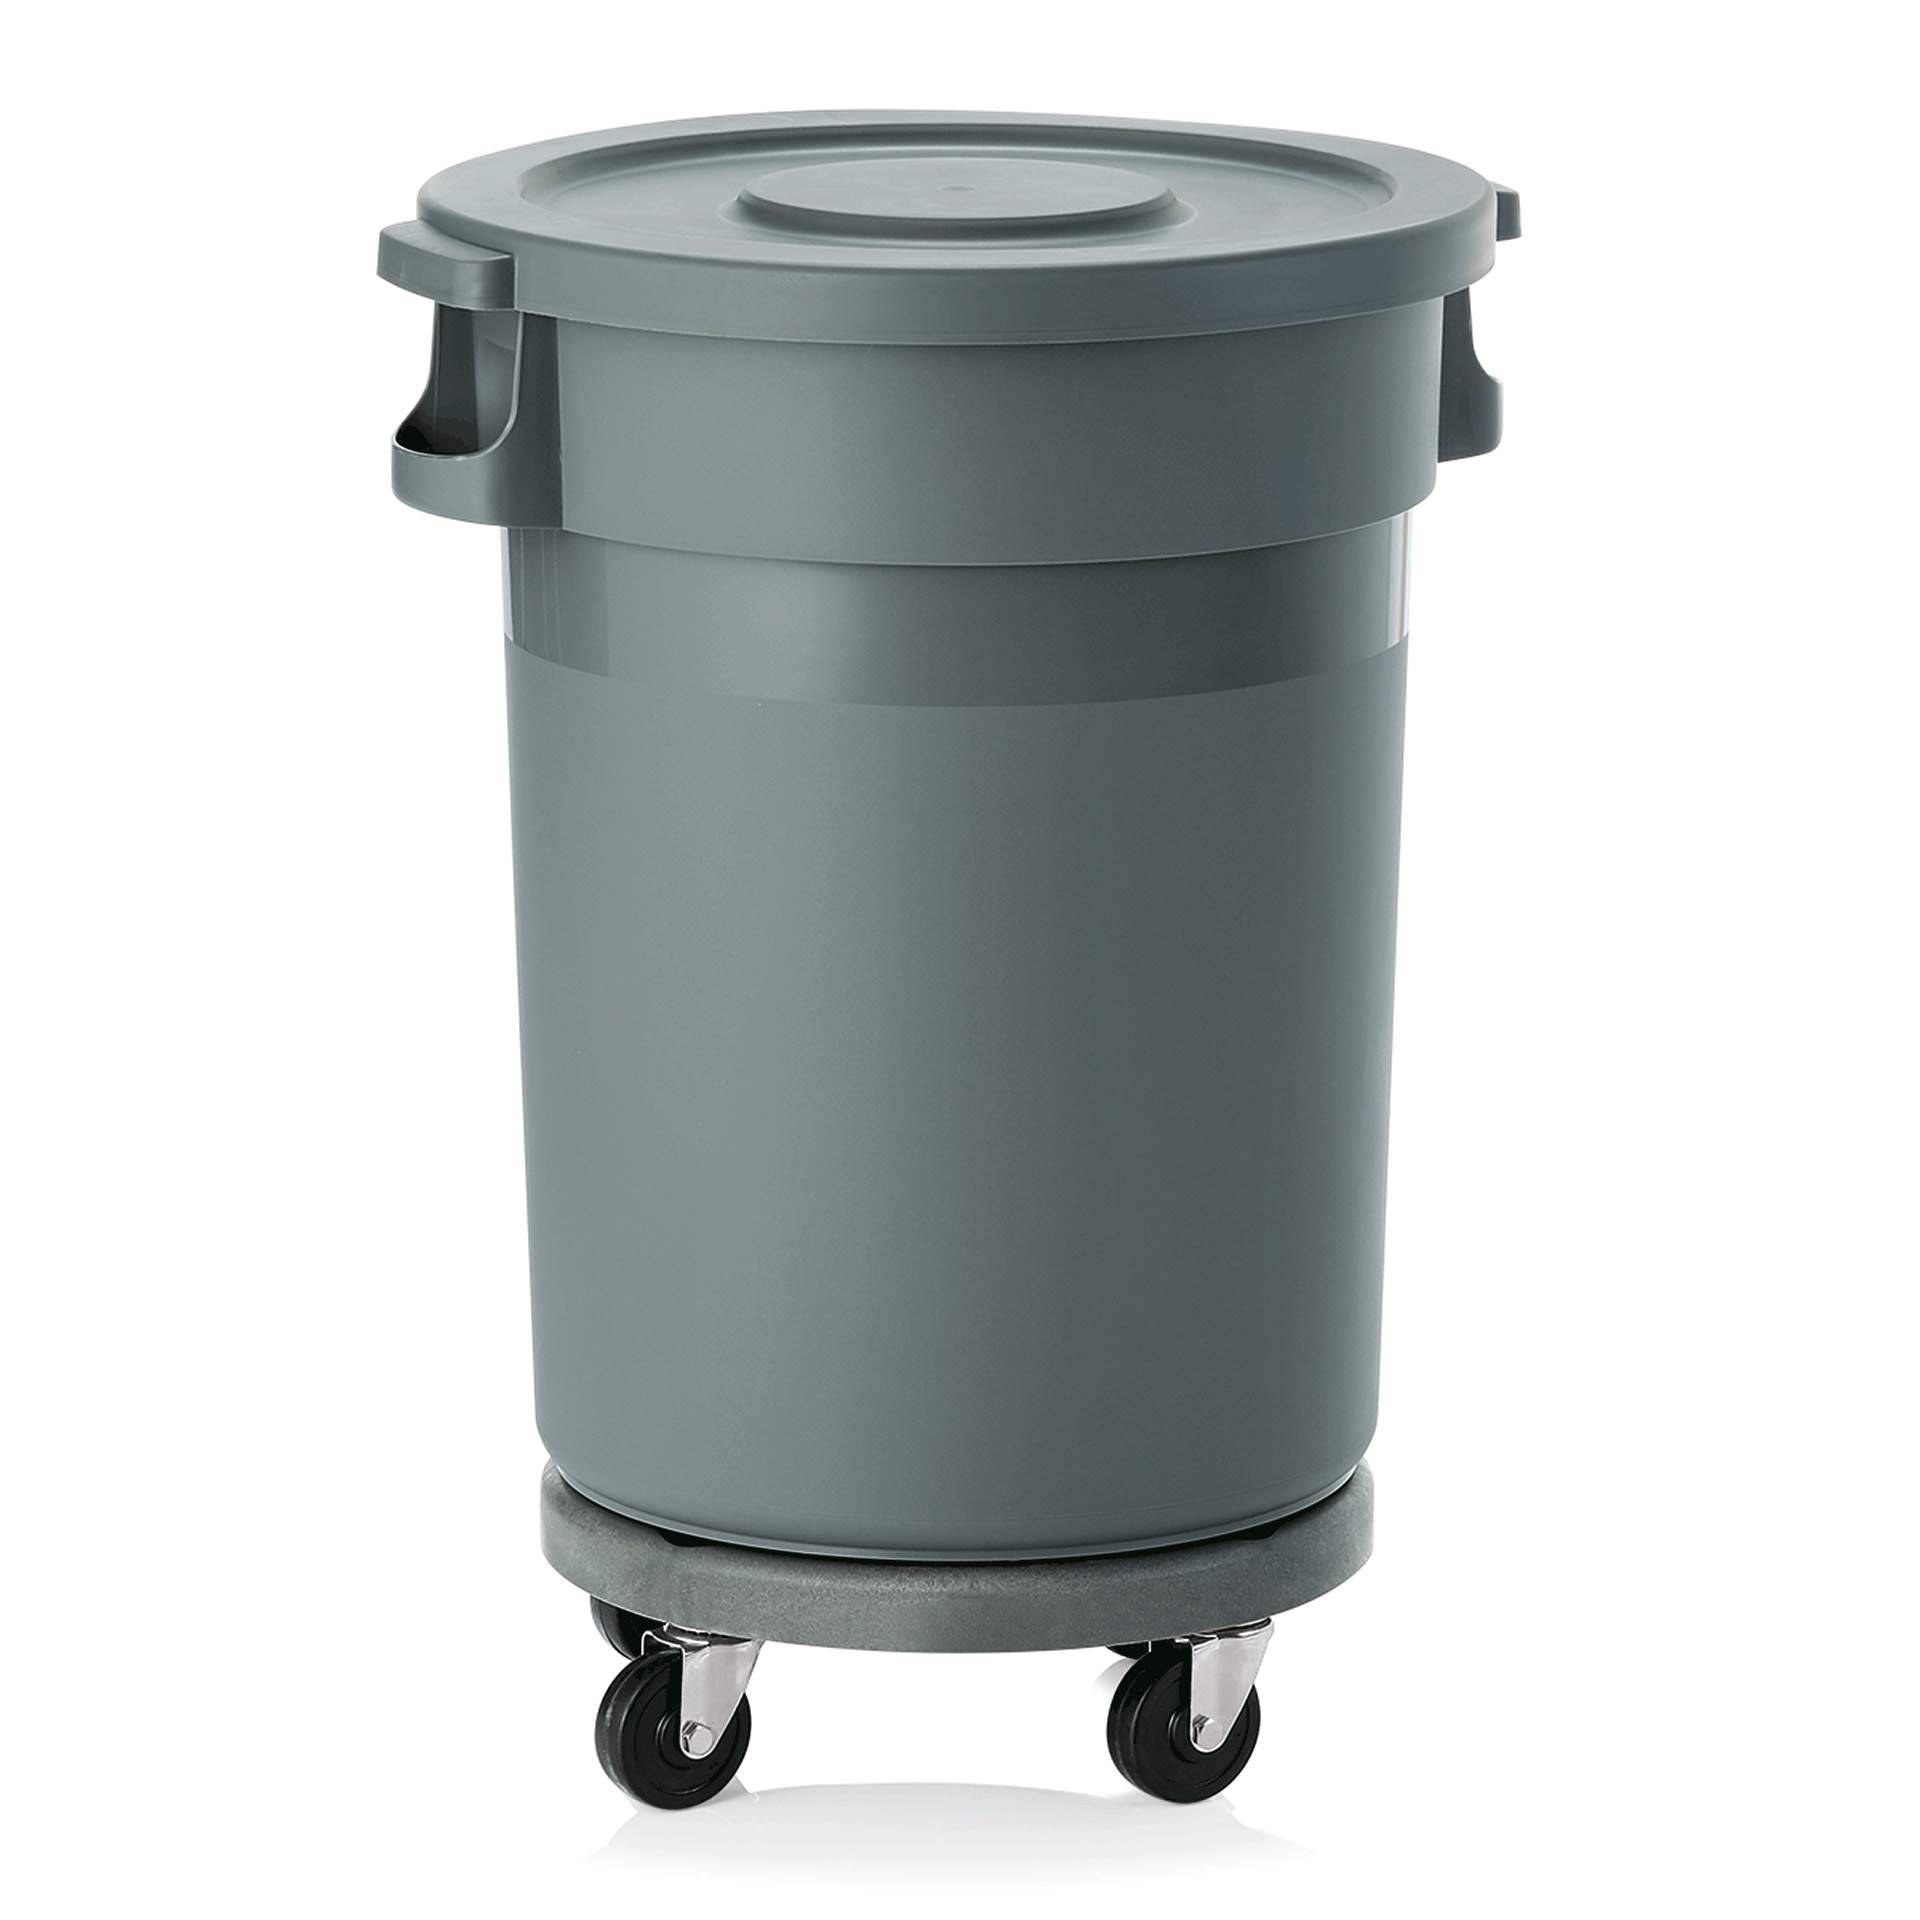 Abfallbehälter - mit Transporttrolley und Flachdeckel - Abm. 91 cm - Ø oben / unten 49 / 41 cm - Inhalt 80 l - Kunststoff - 9219800-A